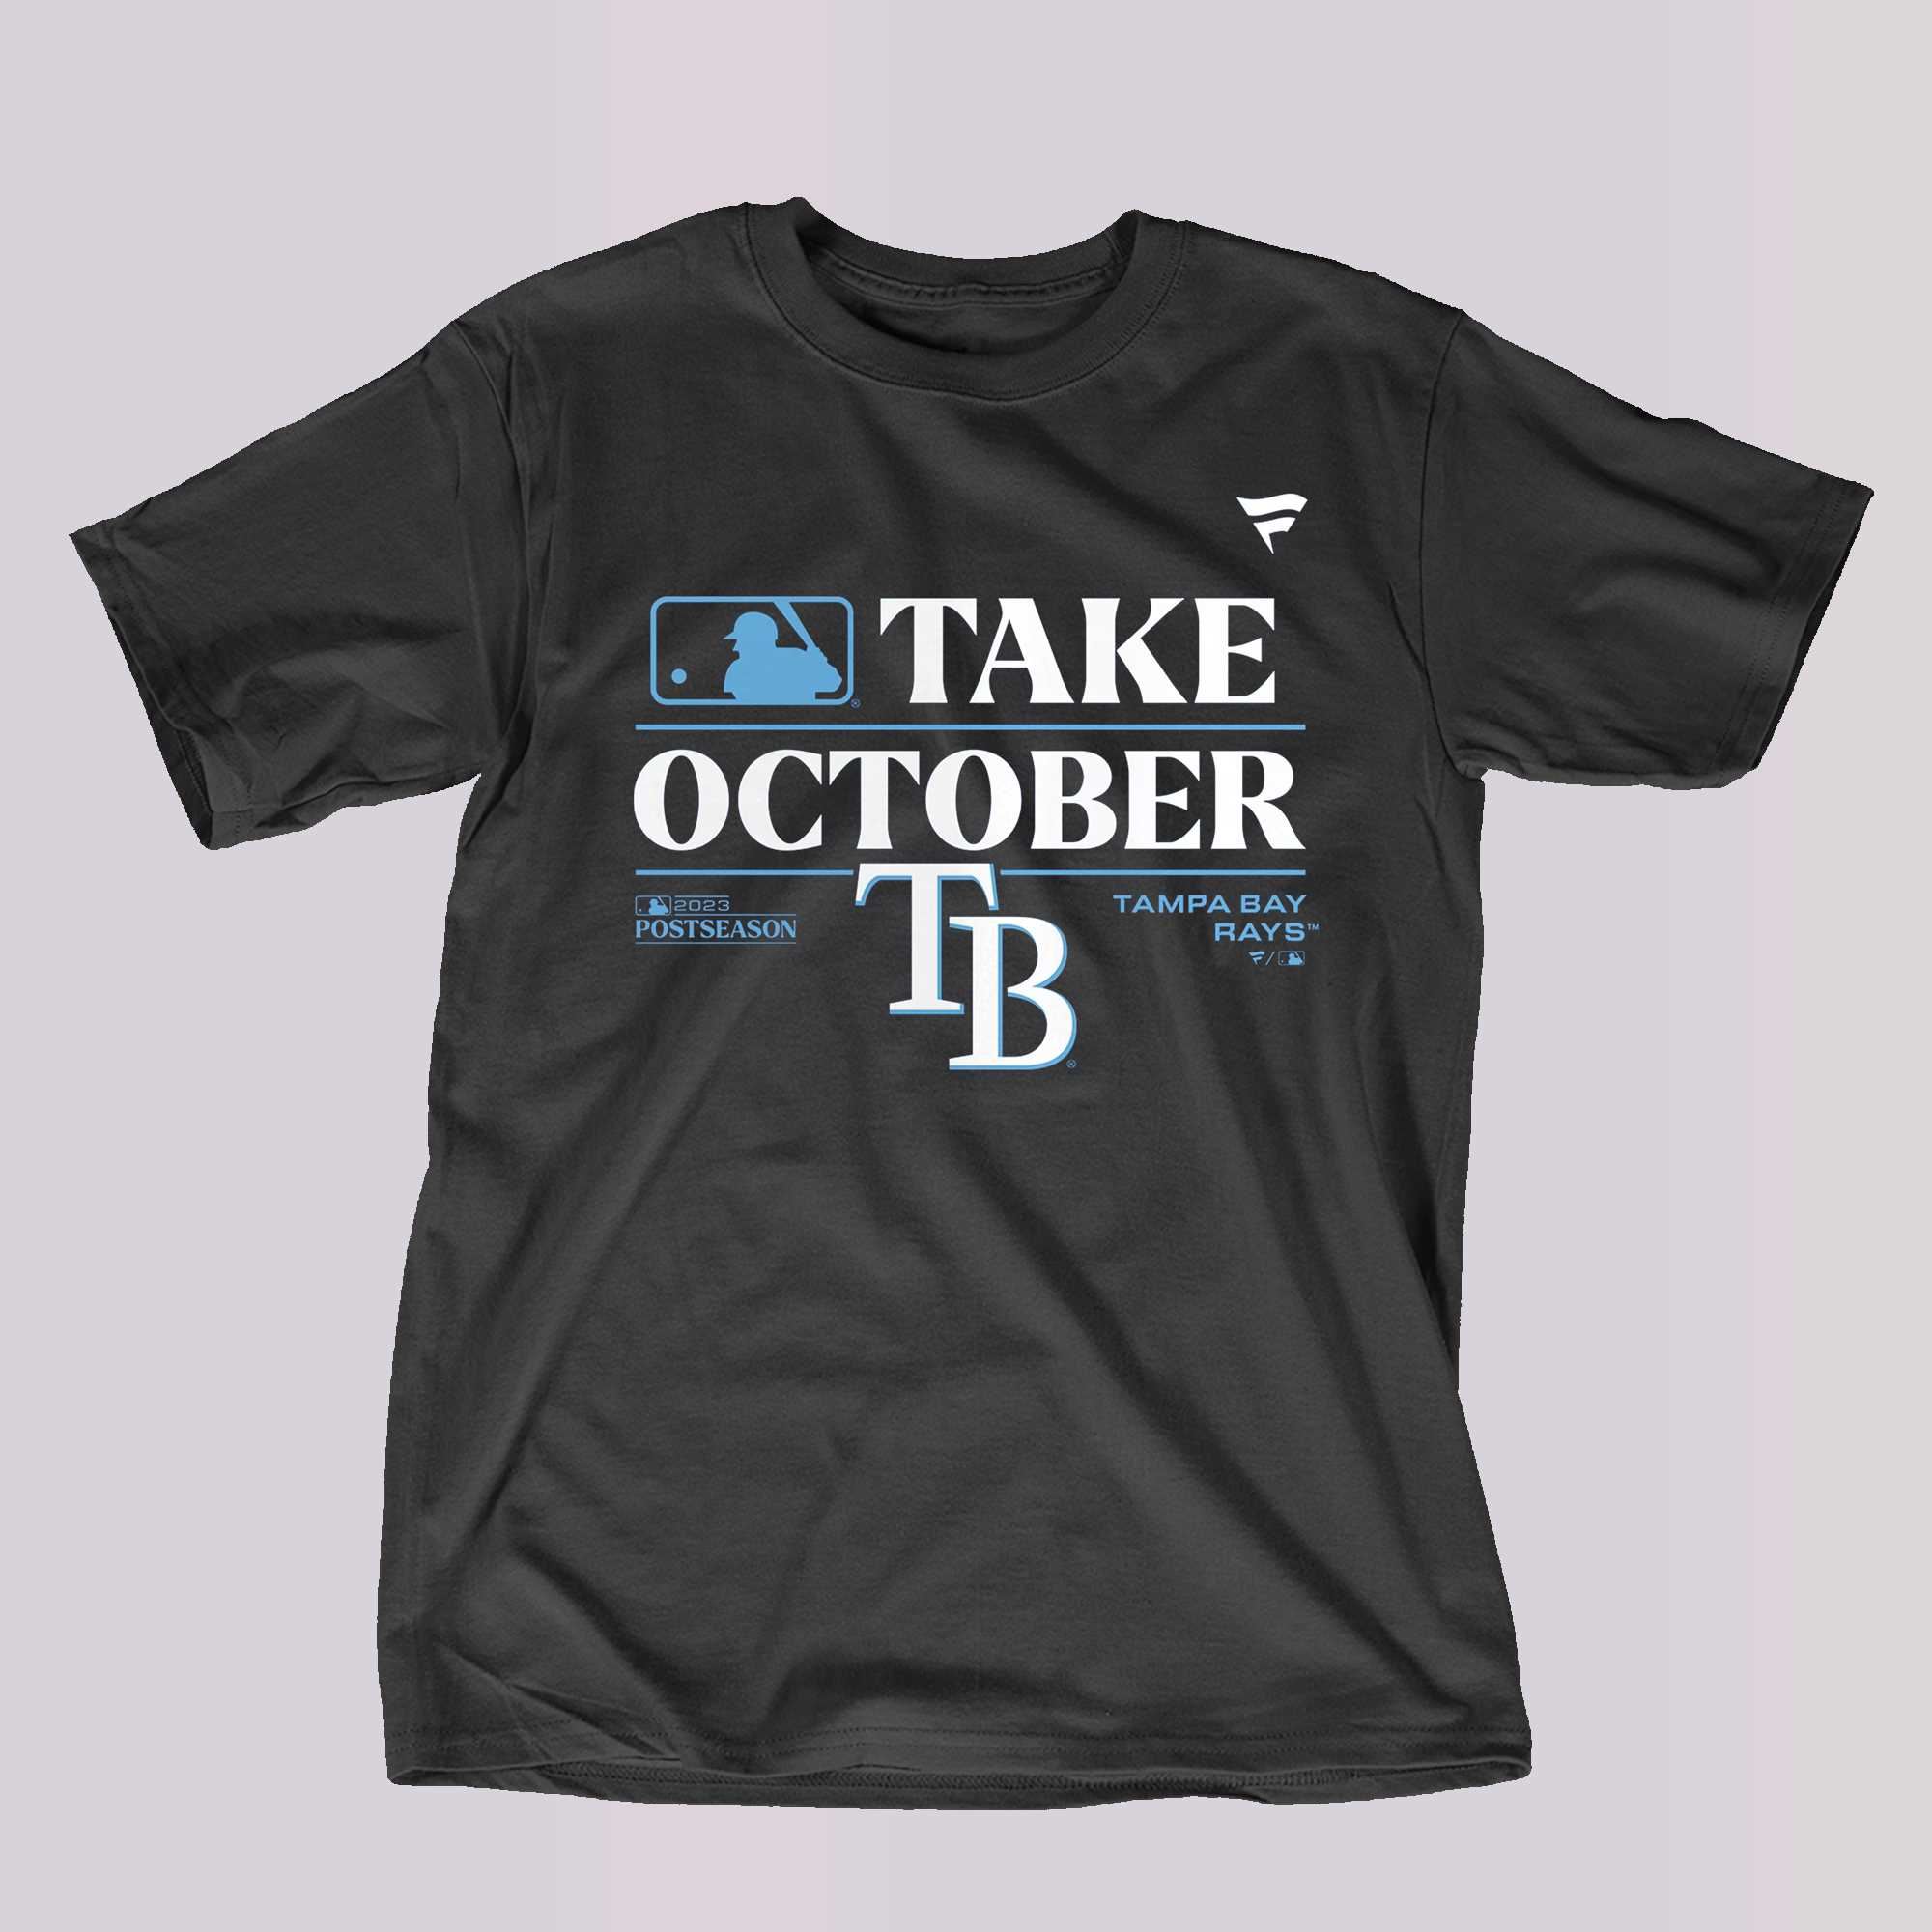 Eletees Seattle Mariners Take October Playoffs 2023 Shirt